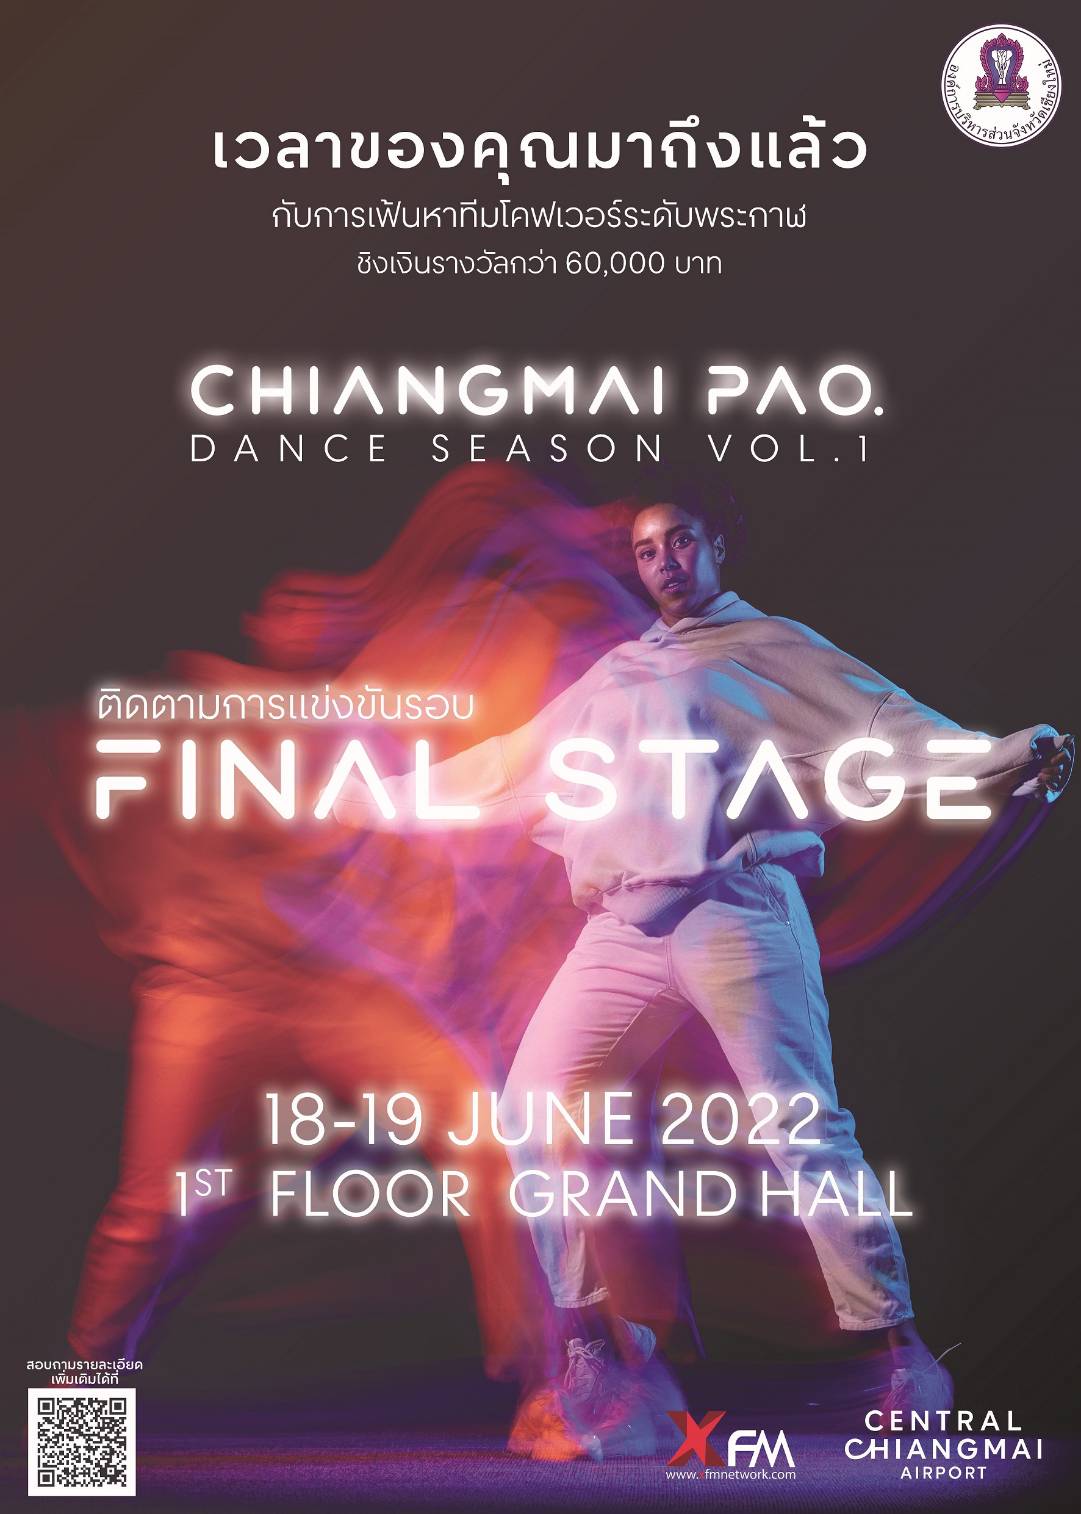 เชียงใหม่ - “CHIANGMAI PAO. DANCE SEASON VOL.1” วันที่ 18-19 มิ.ย. 65 ที่เซ็นทรัล แอร์พอร์ต